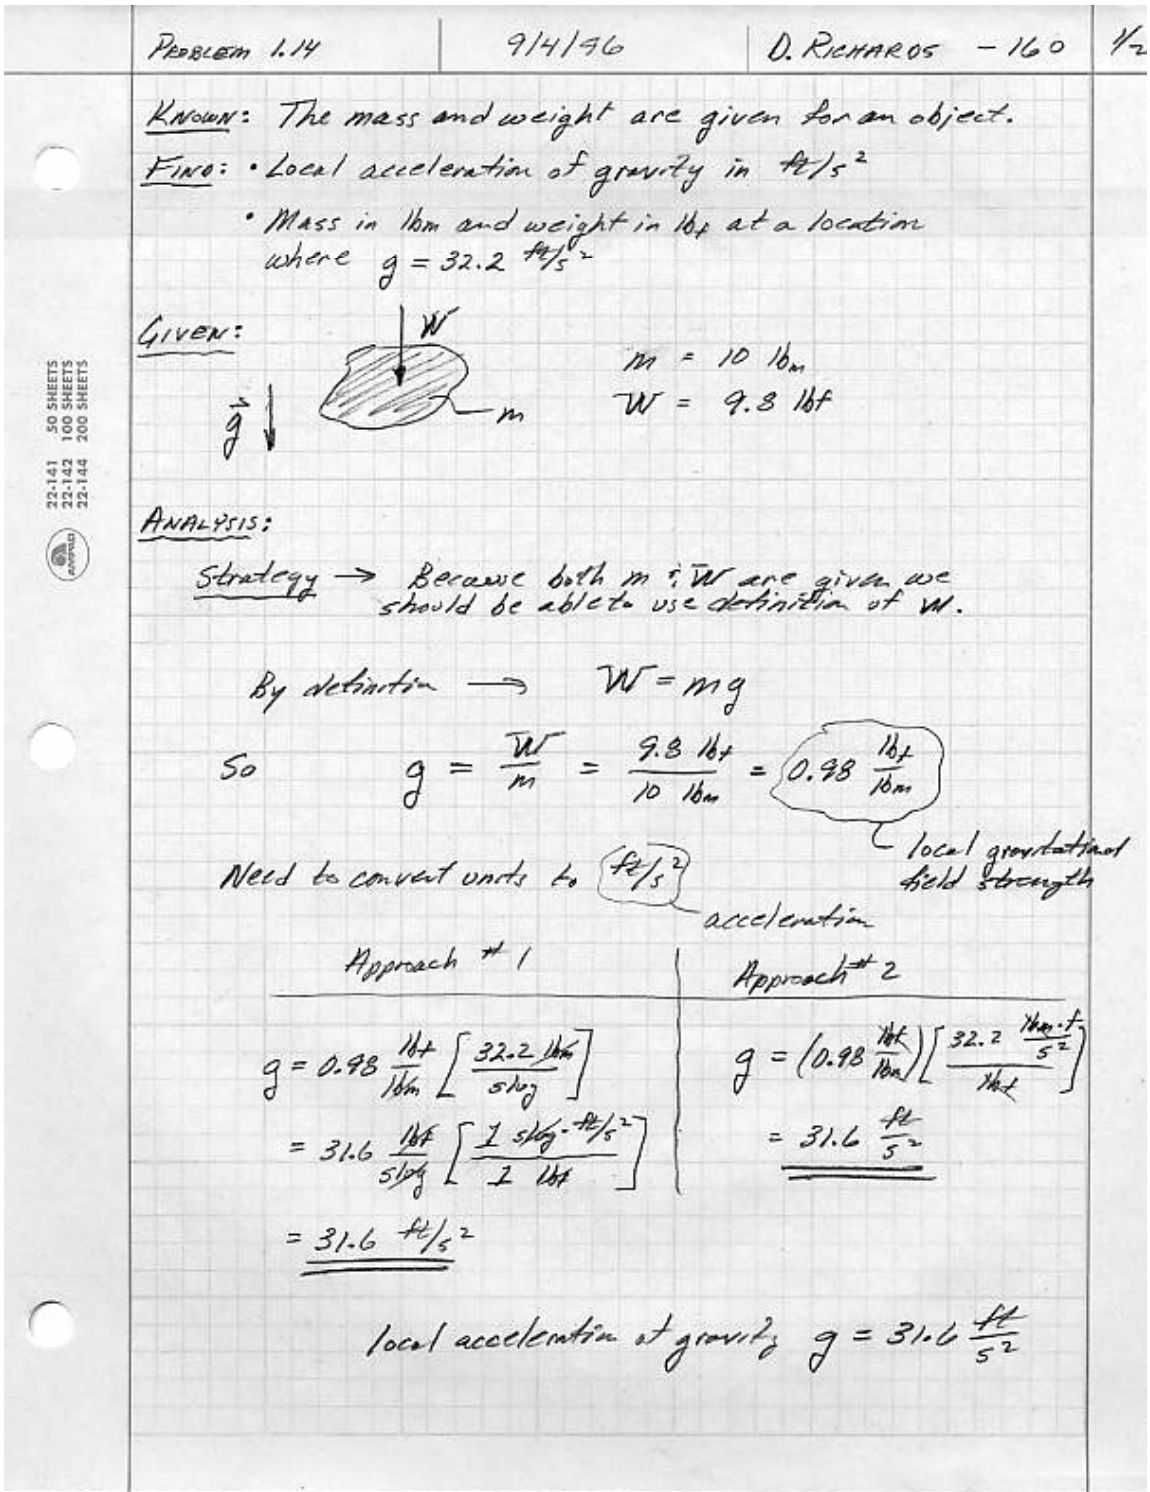 Página 1 de 2 de la solución de Don Richards al problema 1.14, mostrando la información conocida, la información a encontrar, la estrategia de análisis, y la conversión de unidades para la constante de aceleración gravitacional.